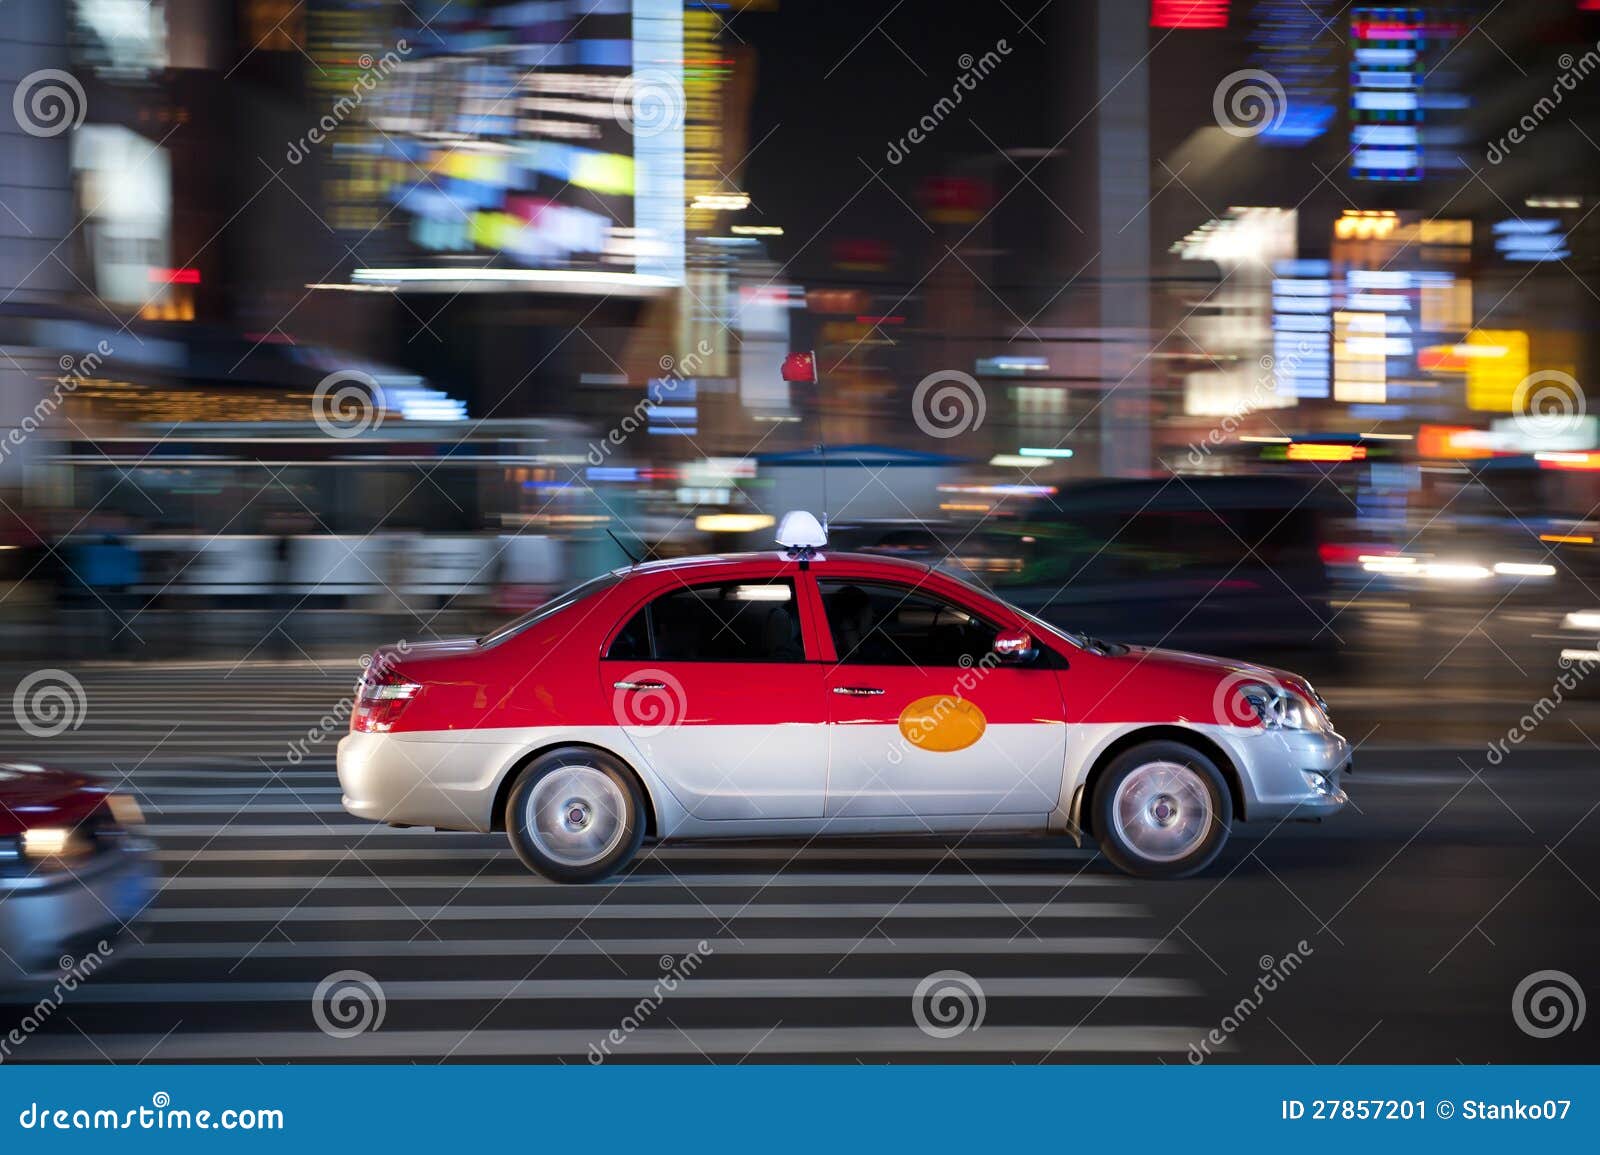 taxi rushing at night